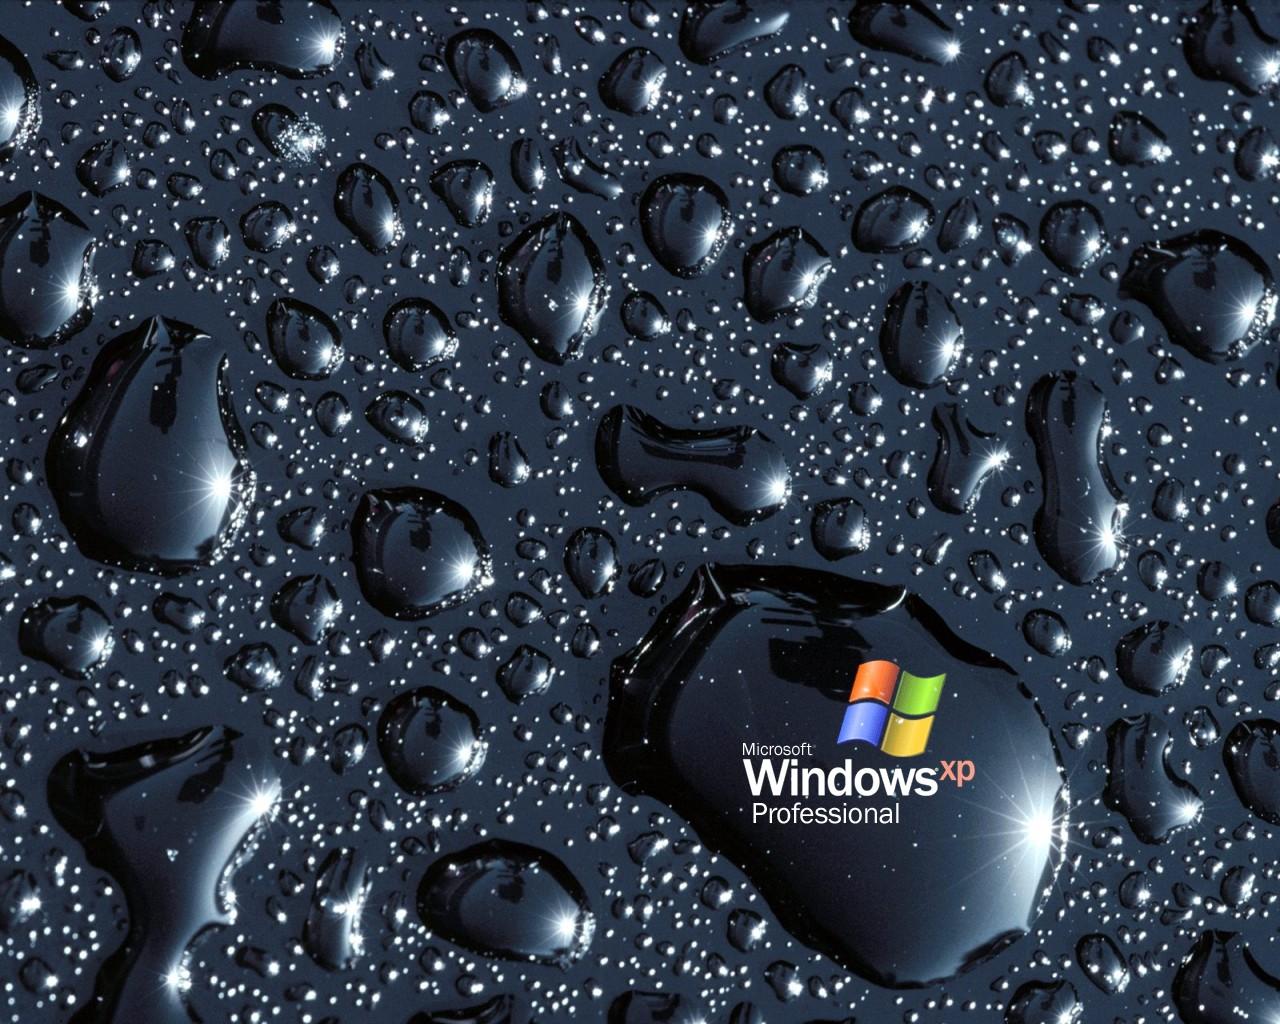 Microsoft Windows Desktop Backgrounds Free Best Hd Wallpapers